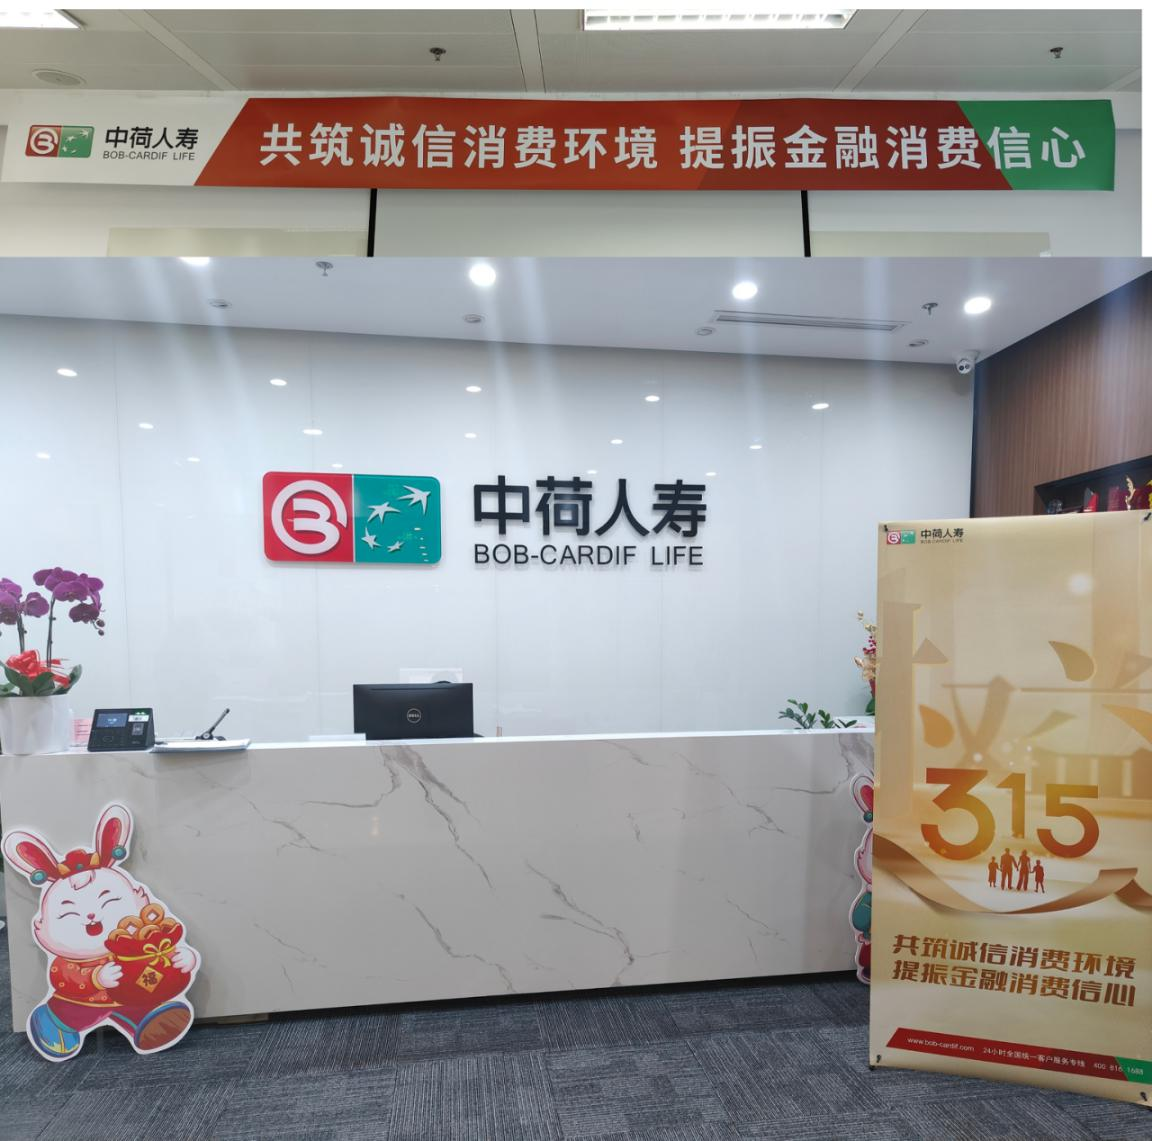 中荷人寿上海分公司开展 “3·15消费者权益保护教育宣传周”活动